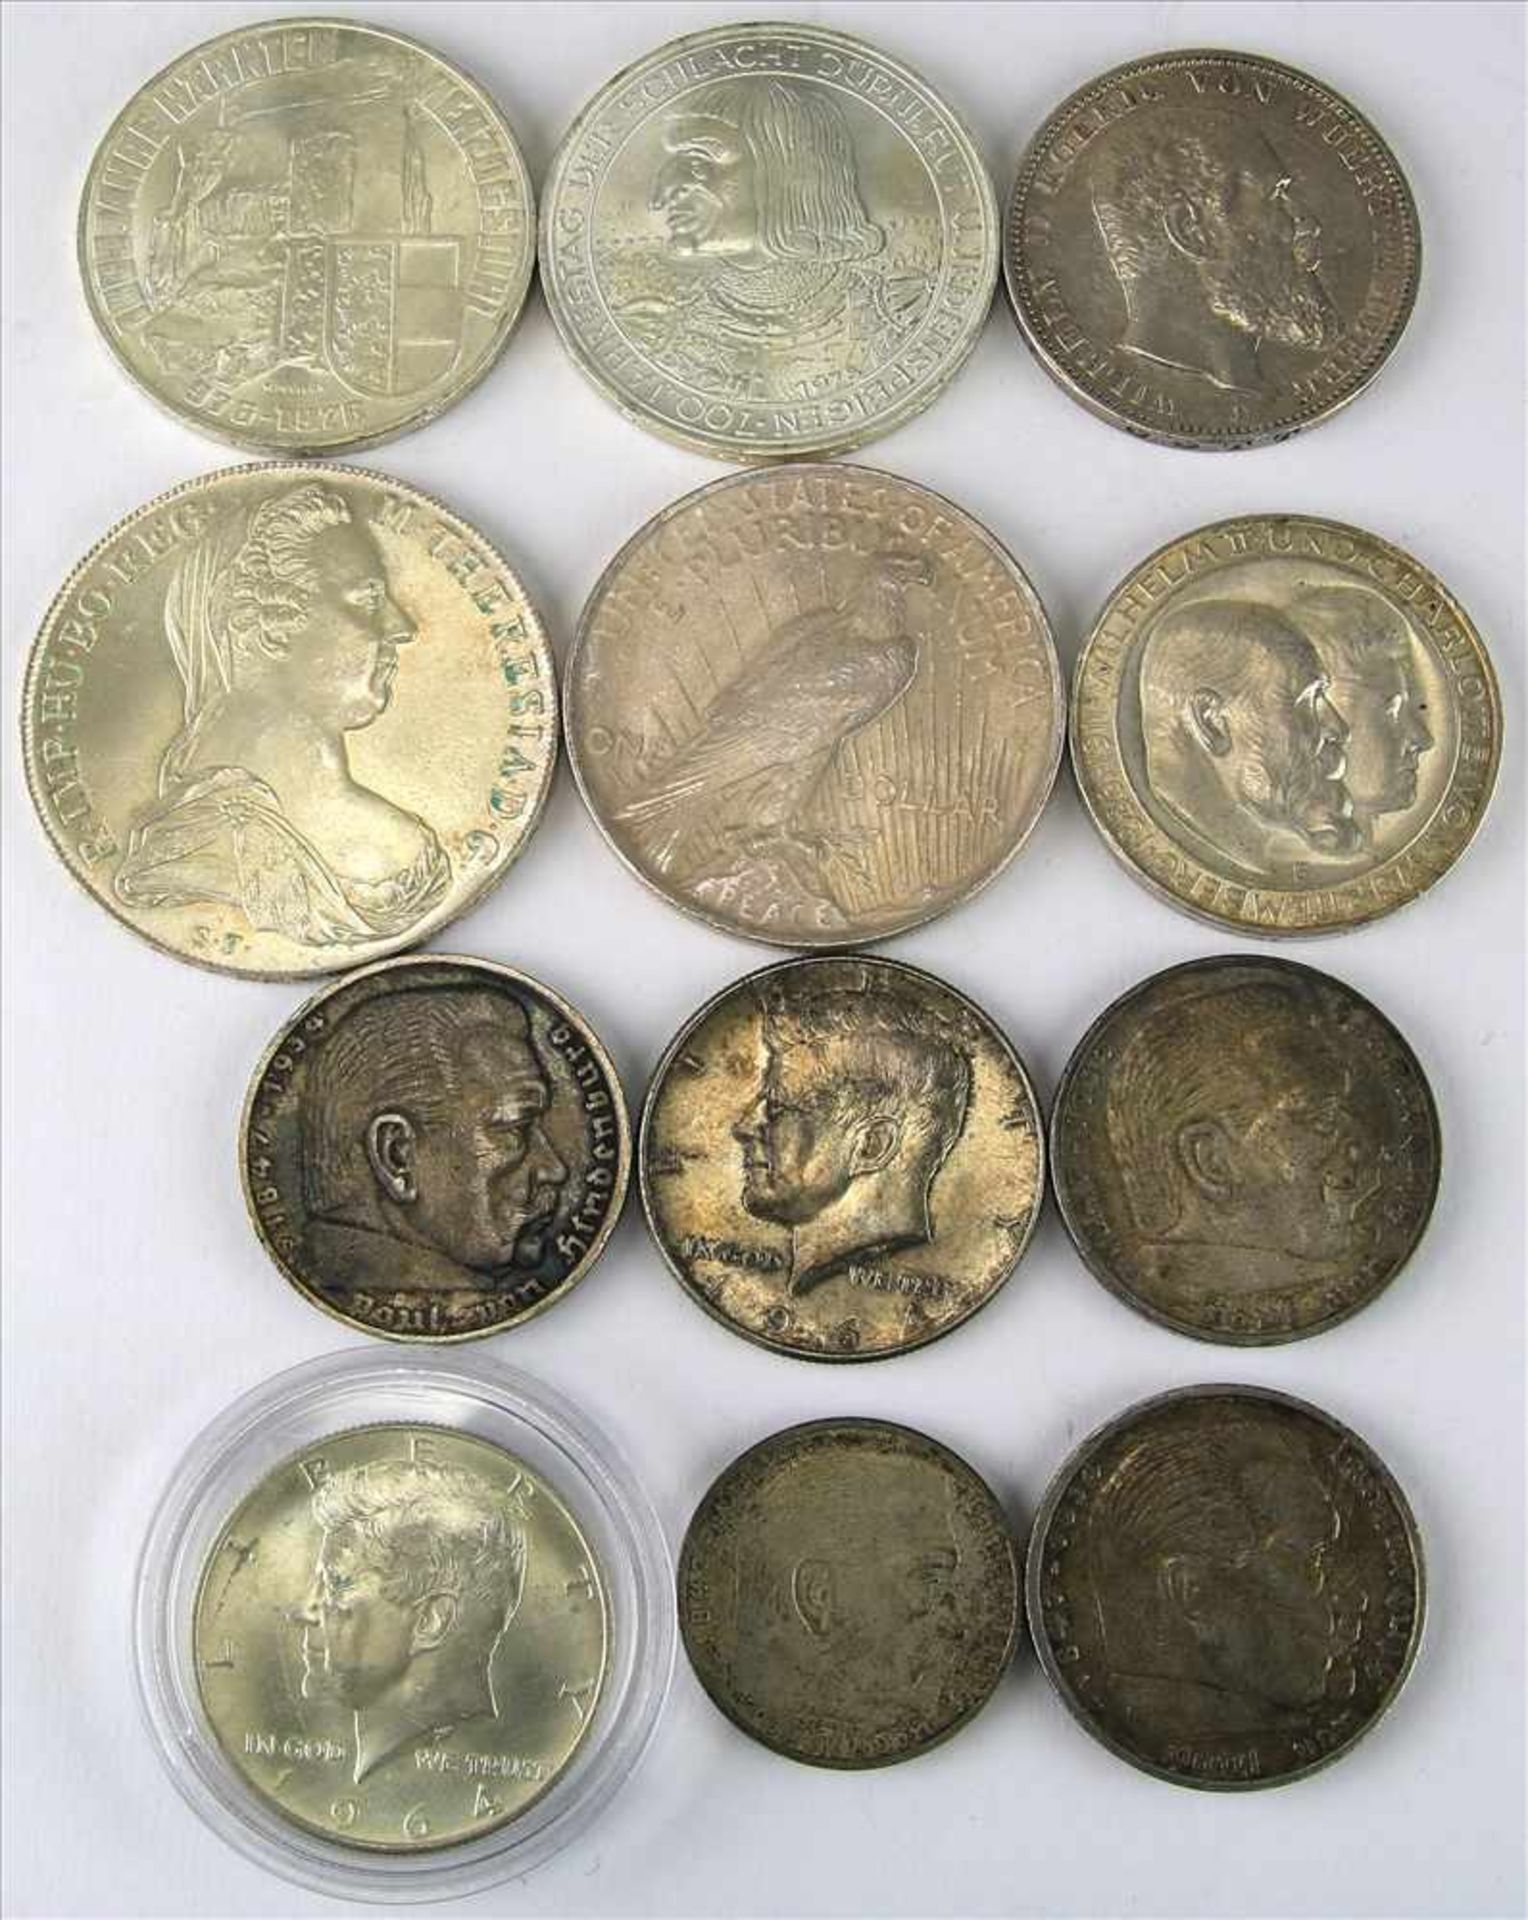 Konvolut MünzenTeils Silber. 2 x 100 Schilling, 1 x Maria Theresia Taler, 2 x 3 Mark Deutsches Reich